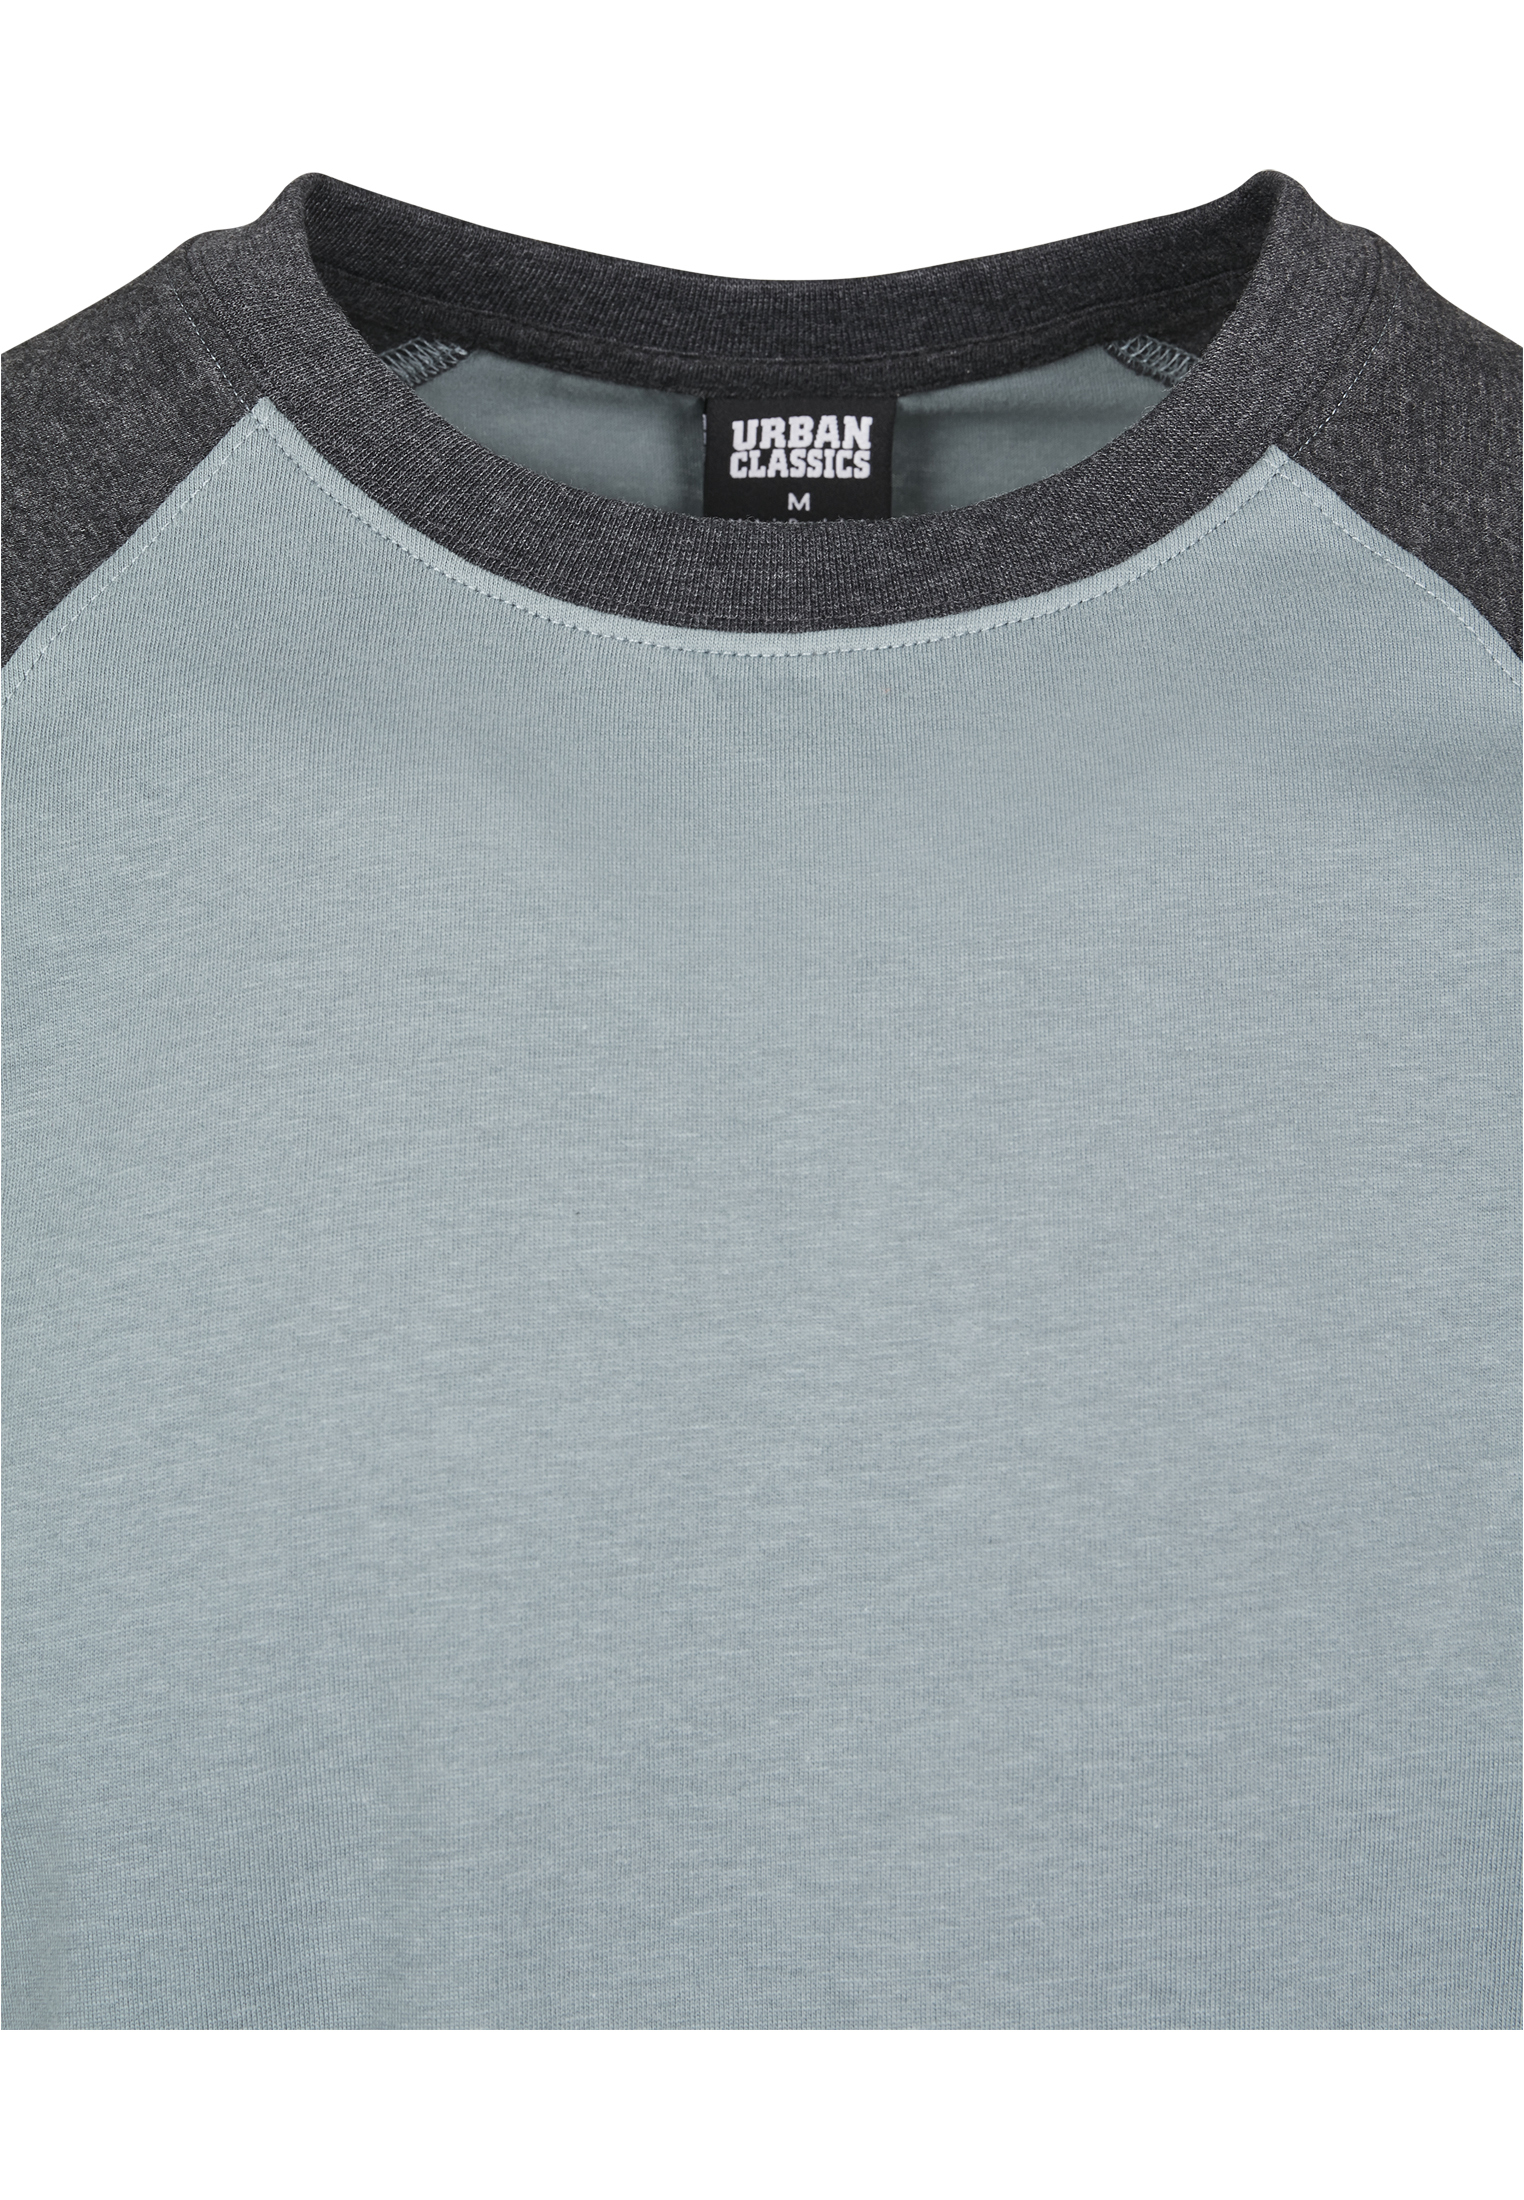 Odzież Mężczyźni Urban Classics Koszulka w kolorze Opalm 